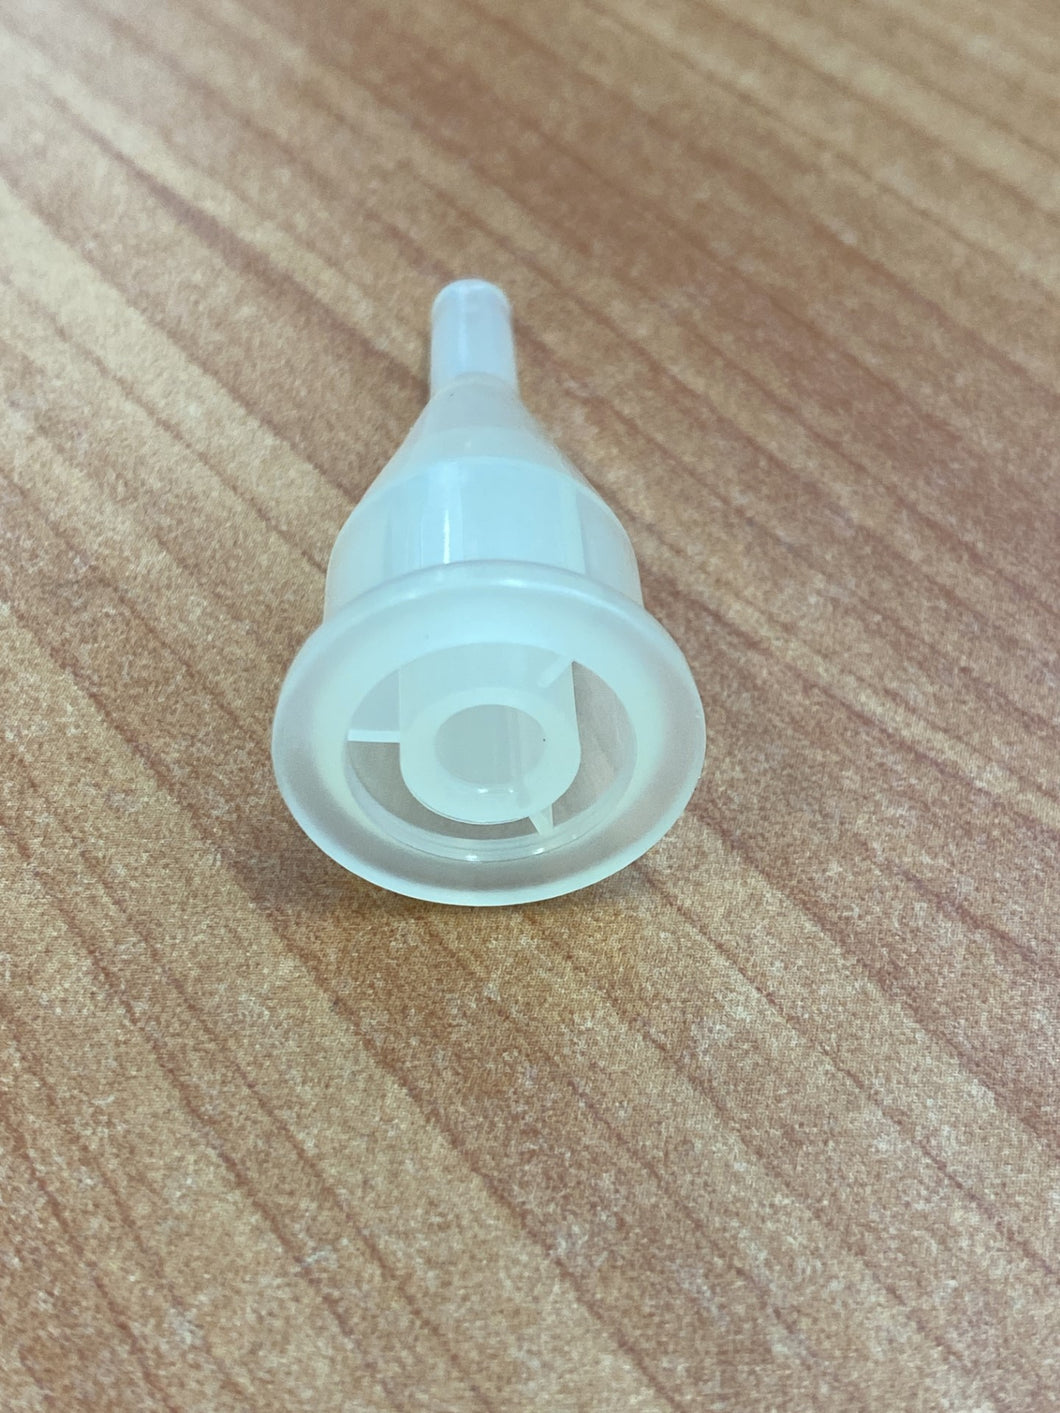 Instillatip connector sterile